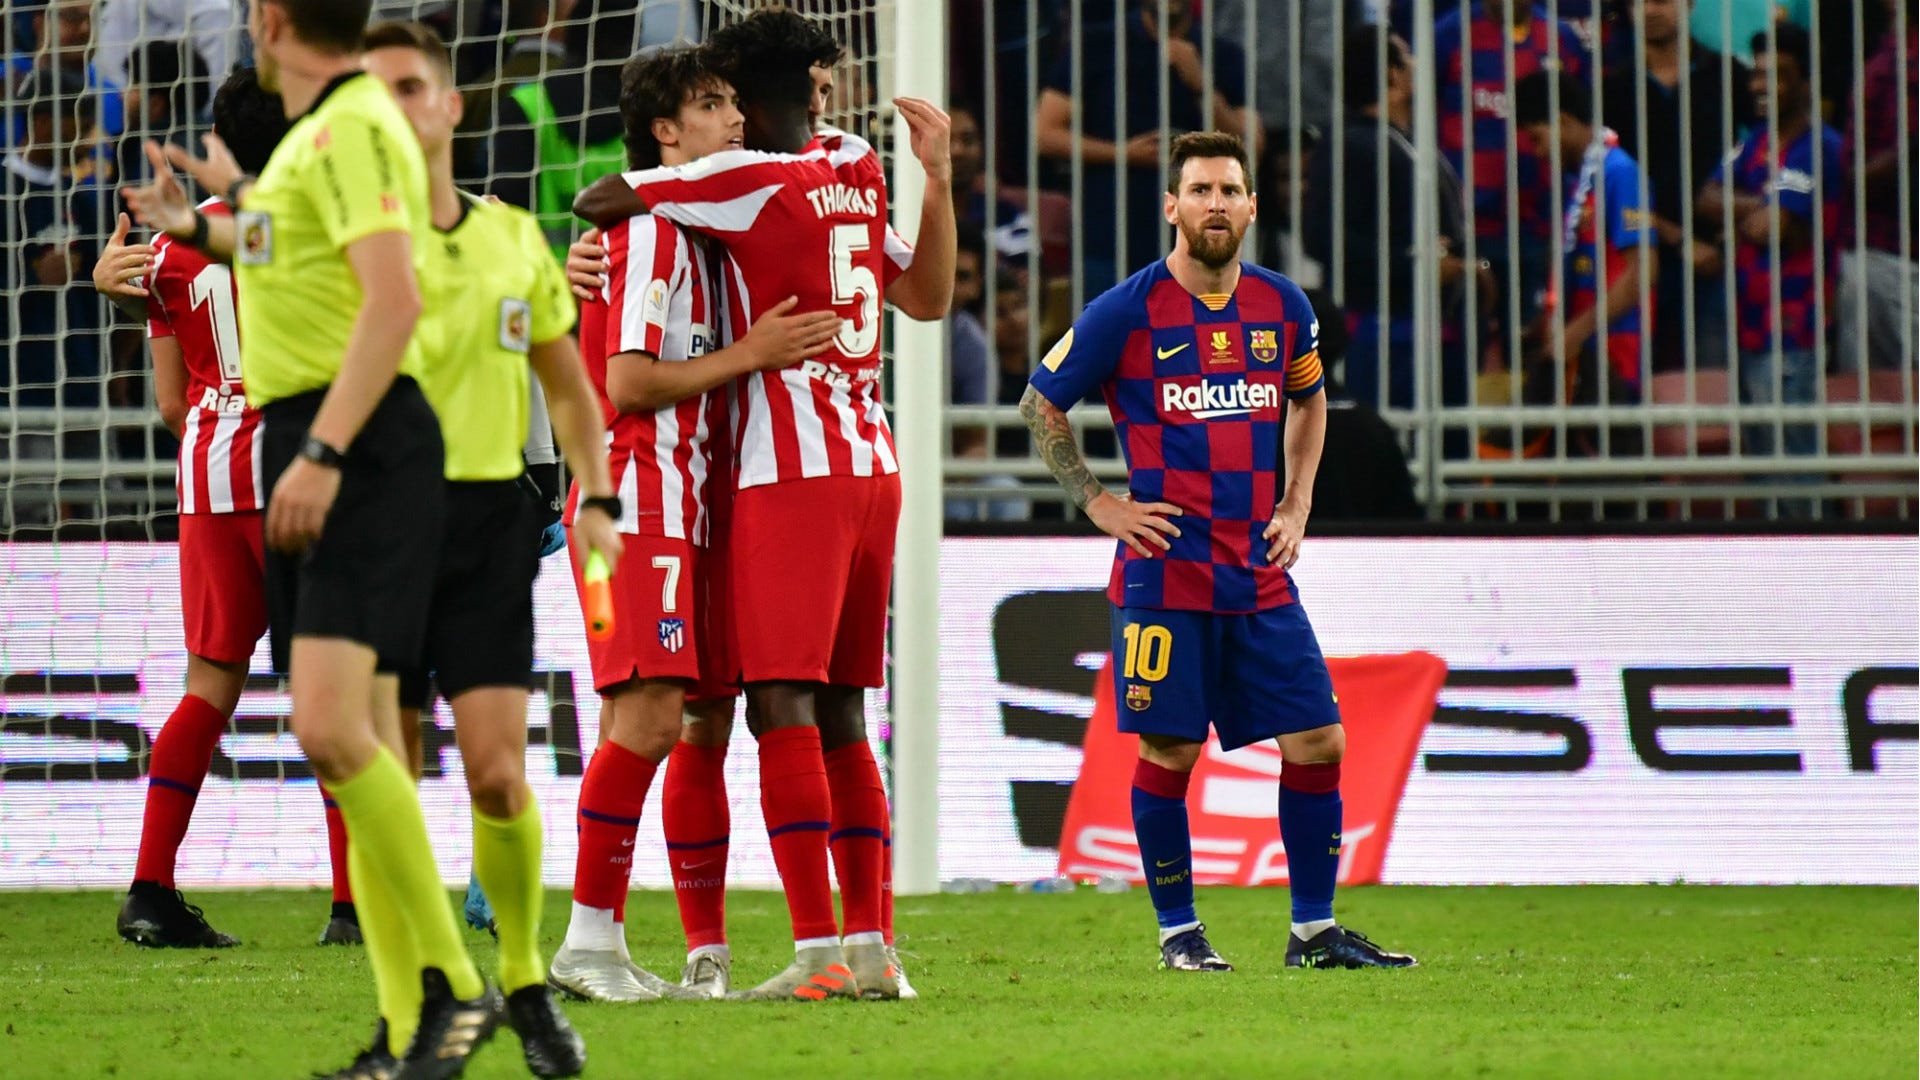 Barca thua Siêu cúp Tây Ban Nha và HLV Valverde. Điều này có nghĩa gì với tương lai của đội bóng? Hãy xem Messi và đồng đội sẽ làm gì để xoay chuyển tình thế cho Barca.